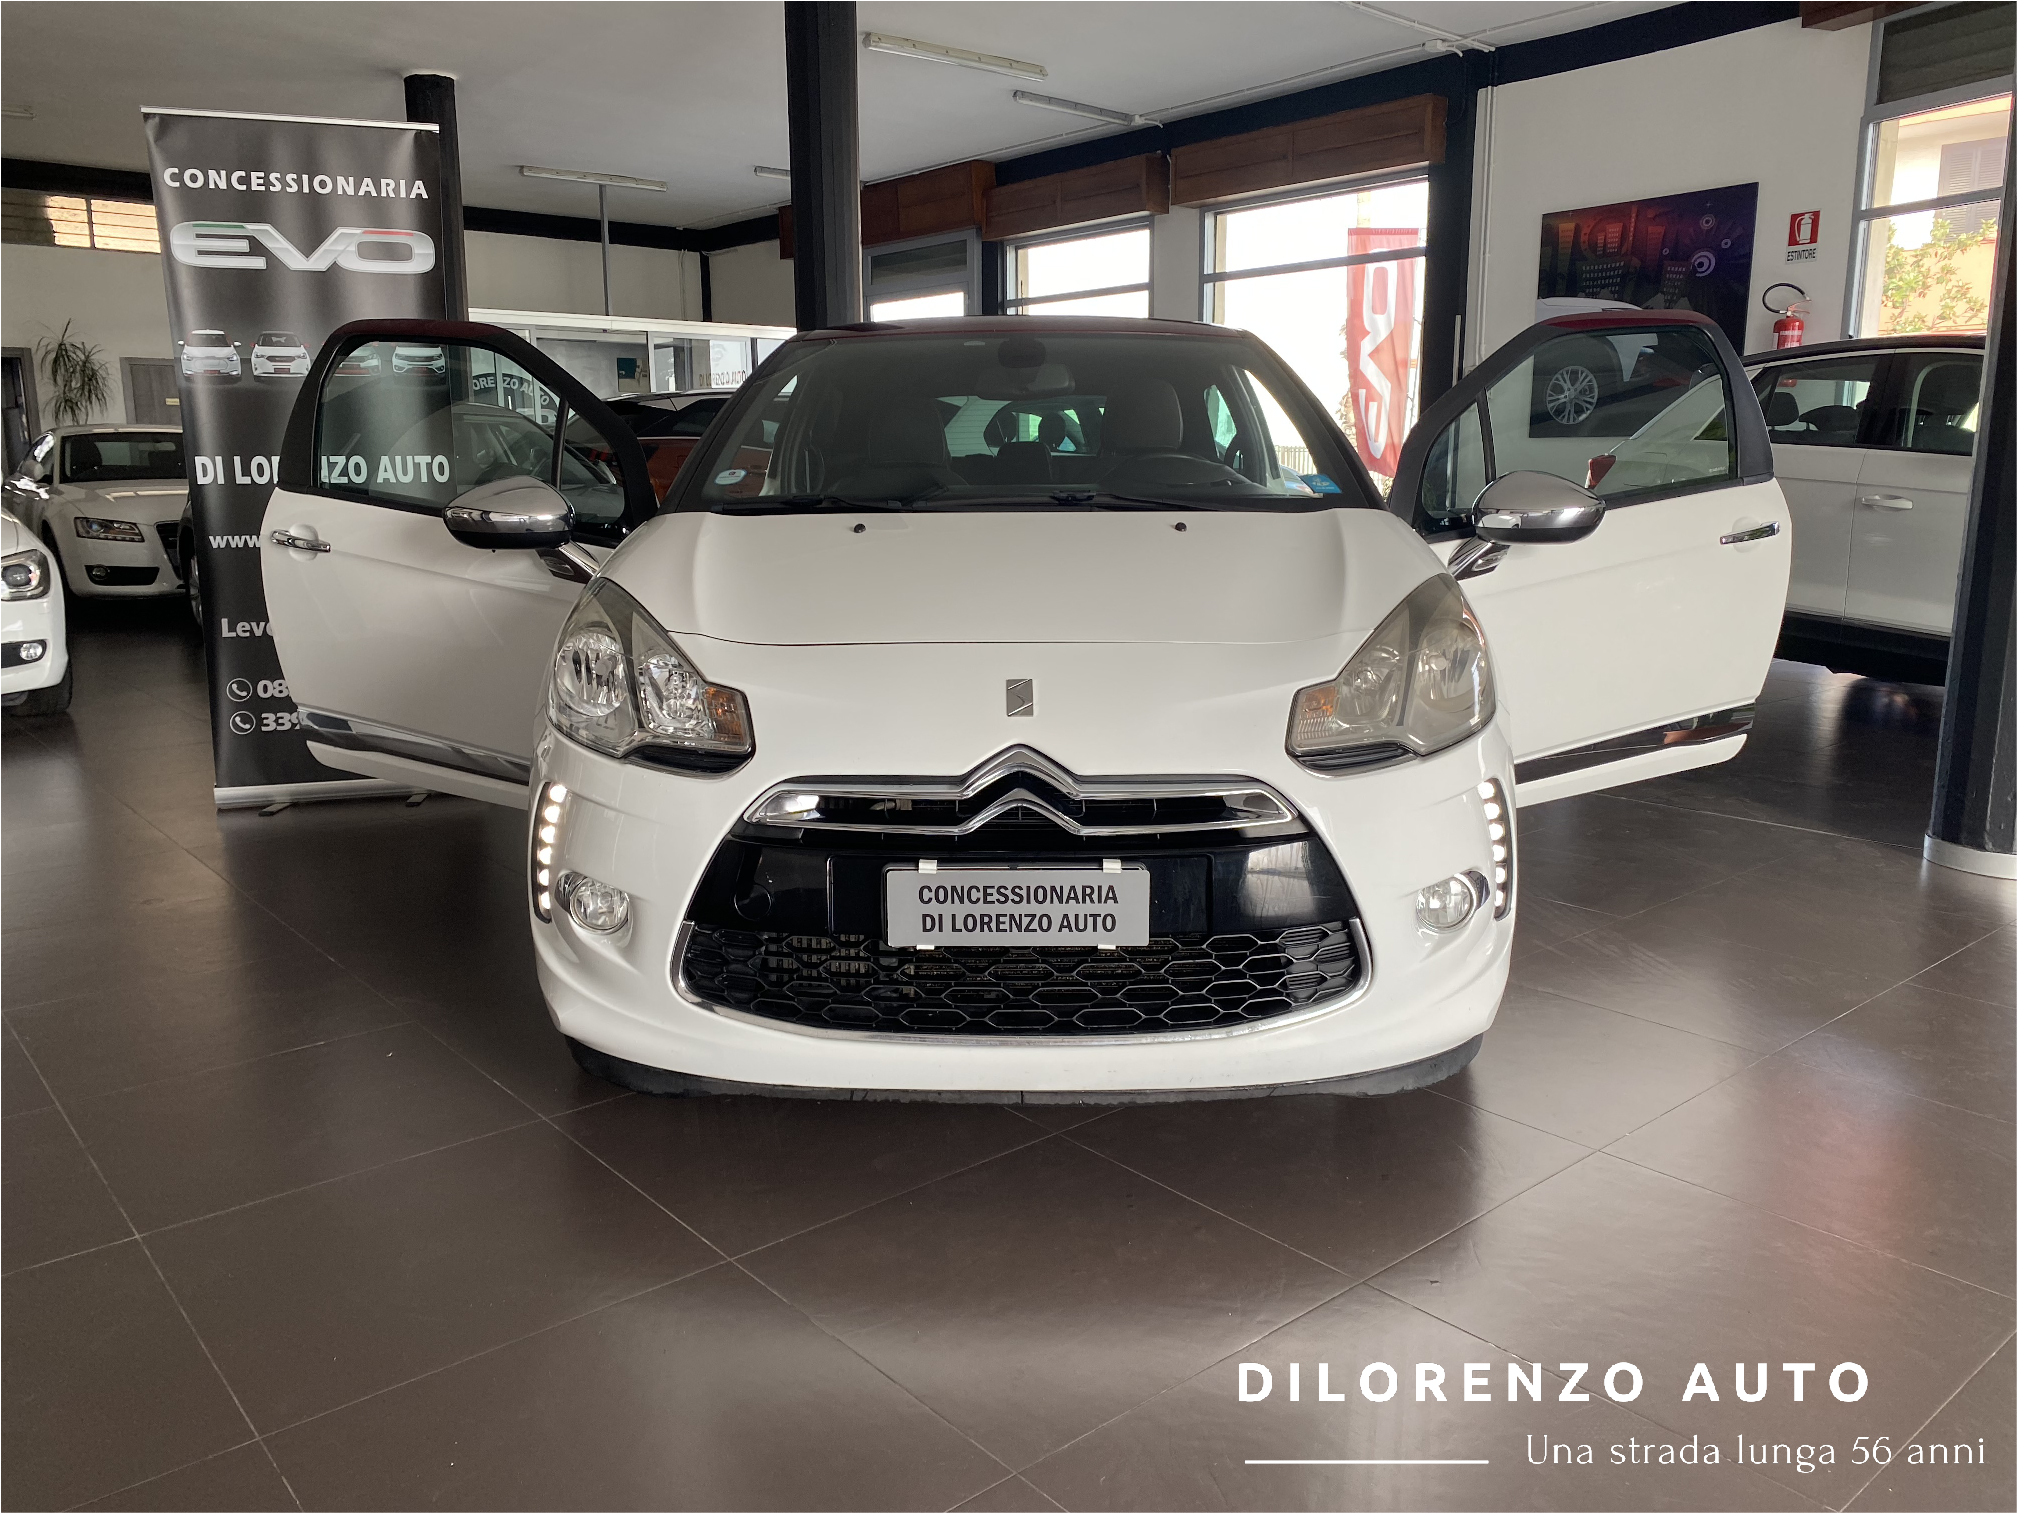  DS 3 - 7.300 - Di Lorenzo Auto Leverano (Le)